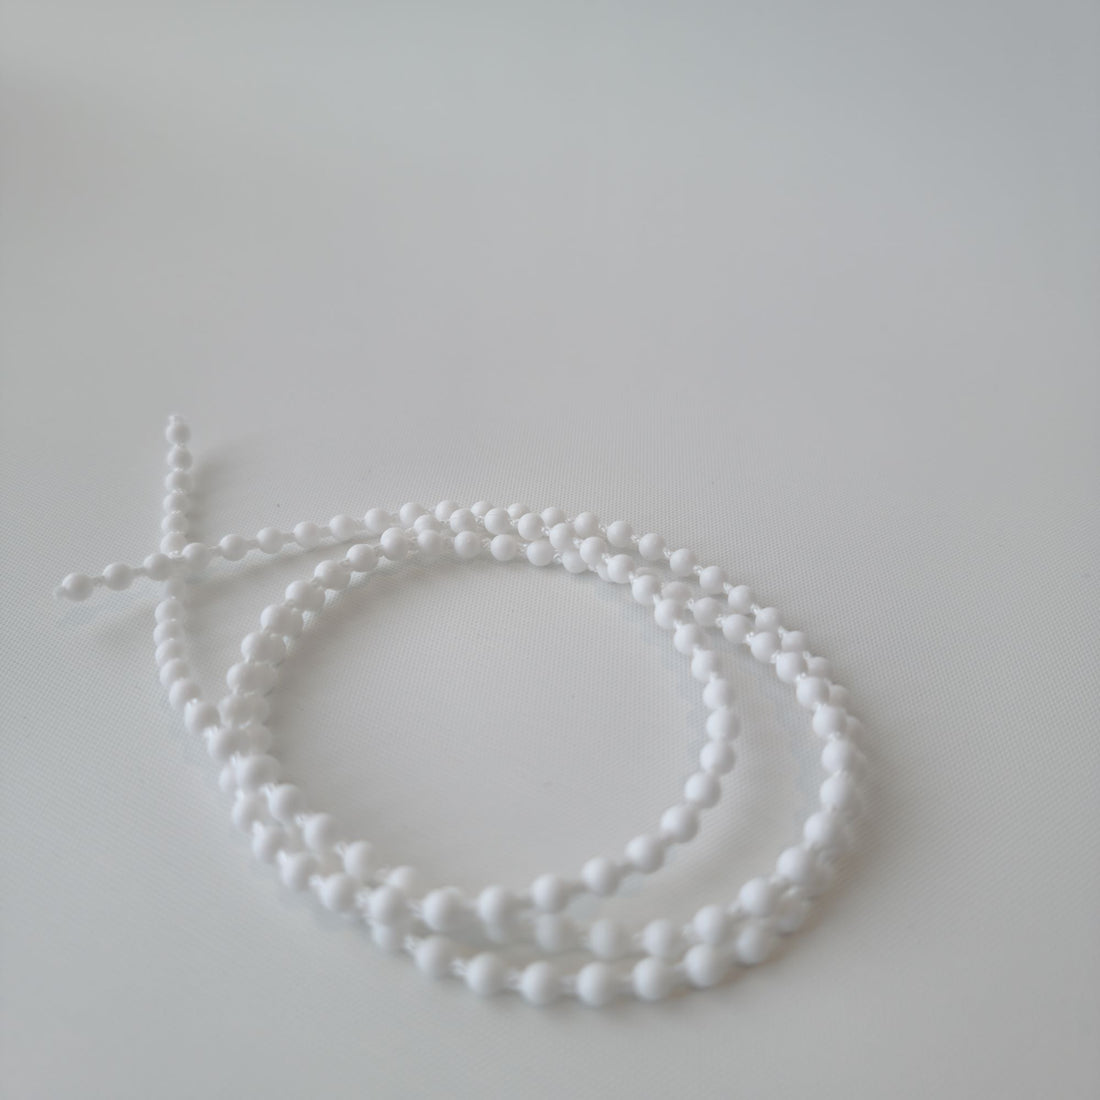 Roller Blind plastic chain - 10 metres - white